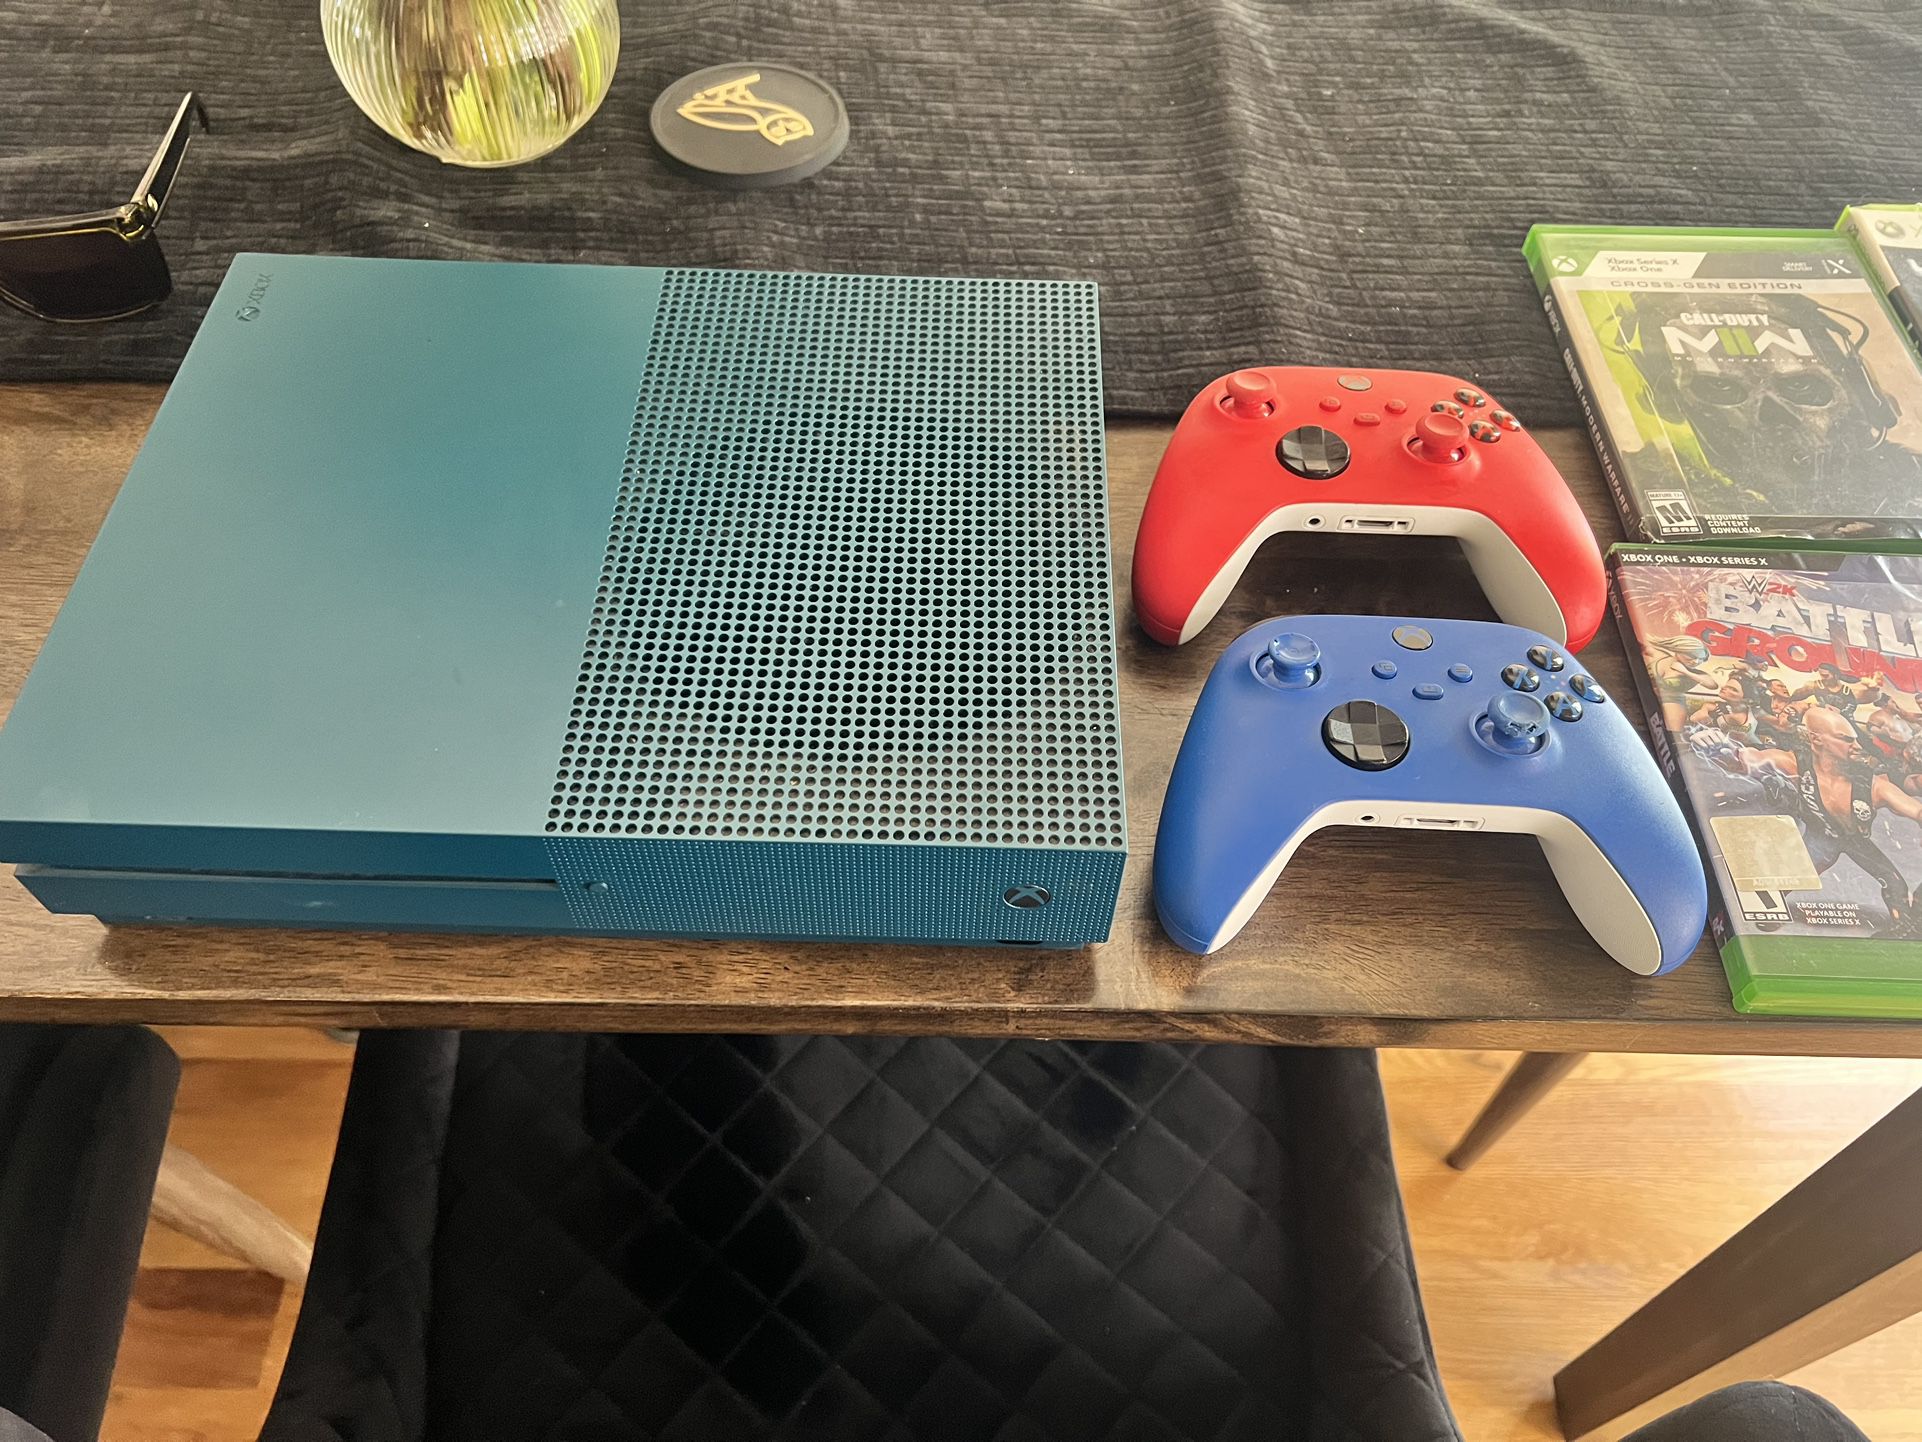 Xbox One S Turquoise 